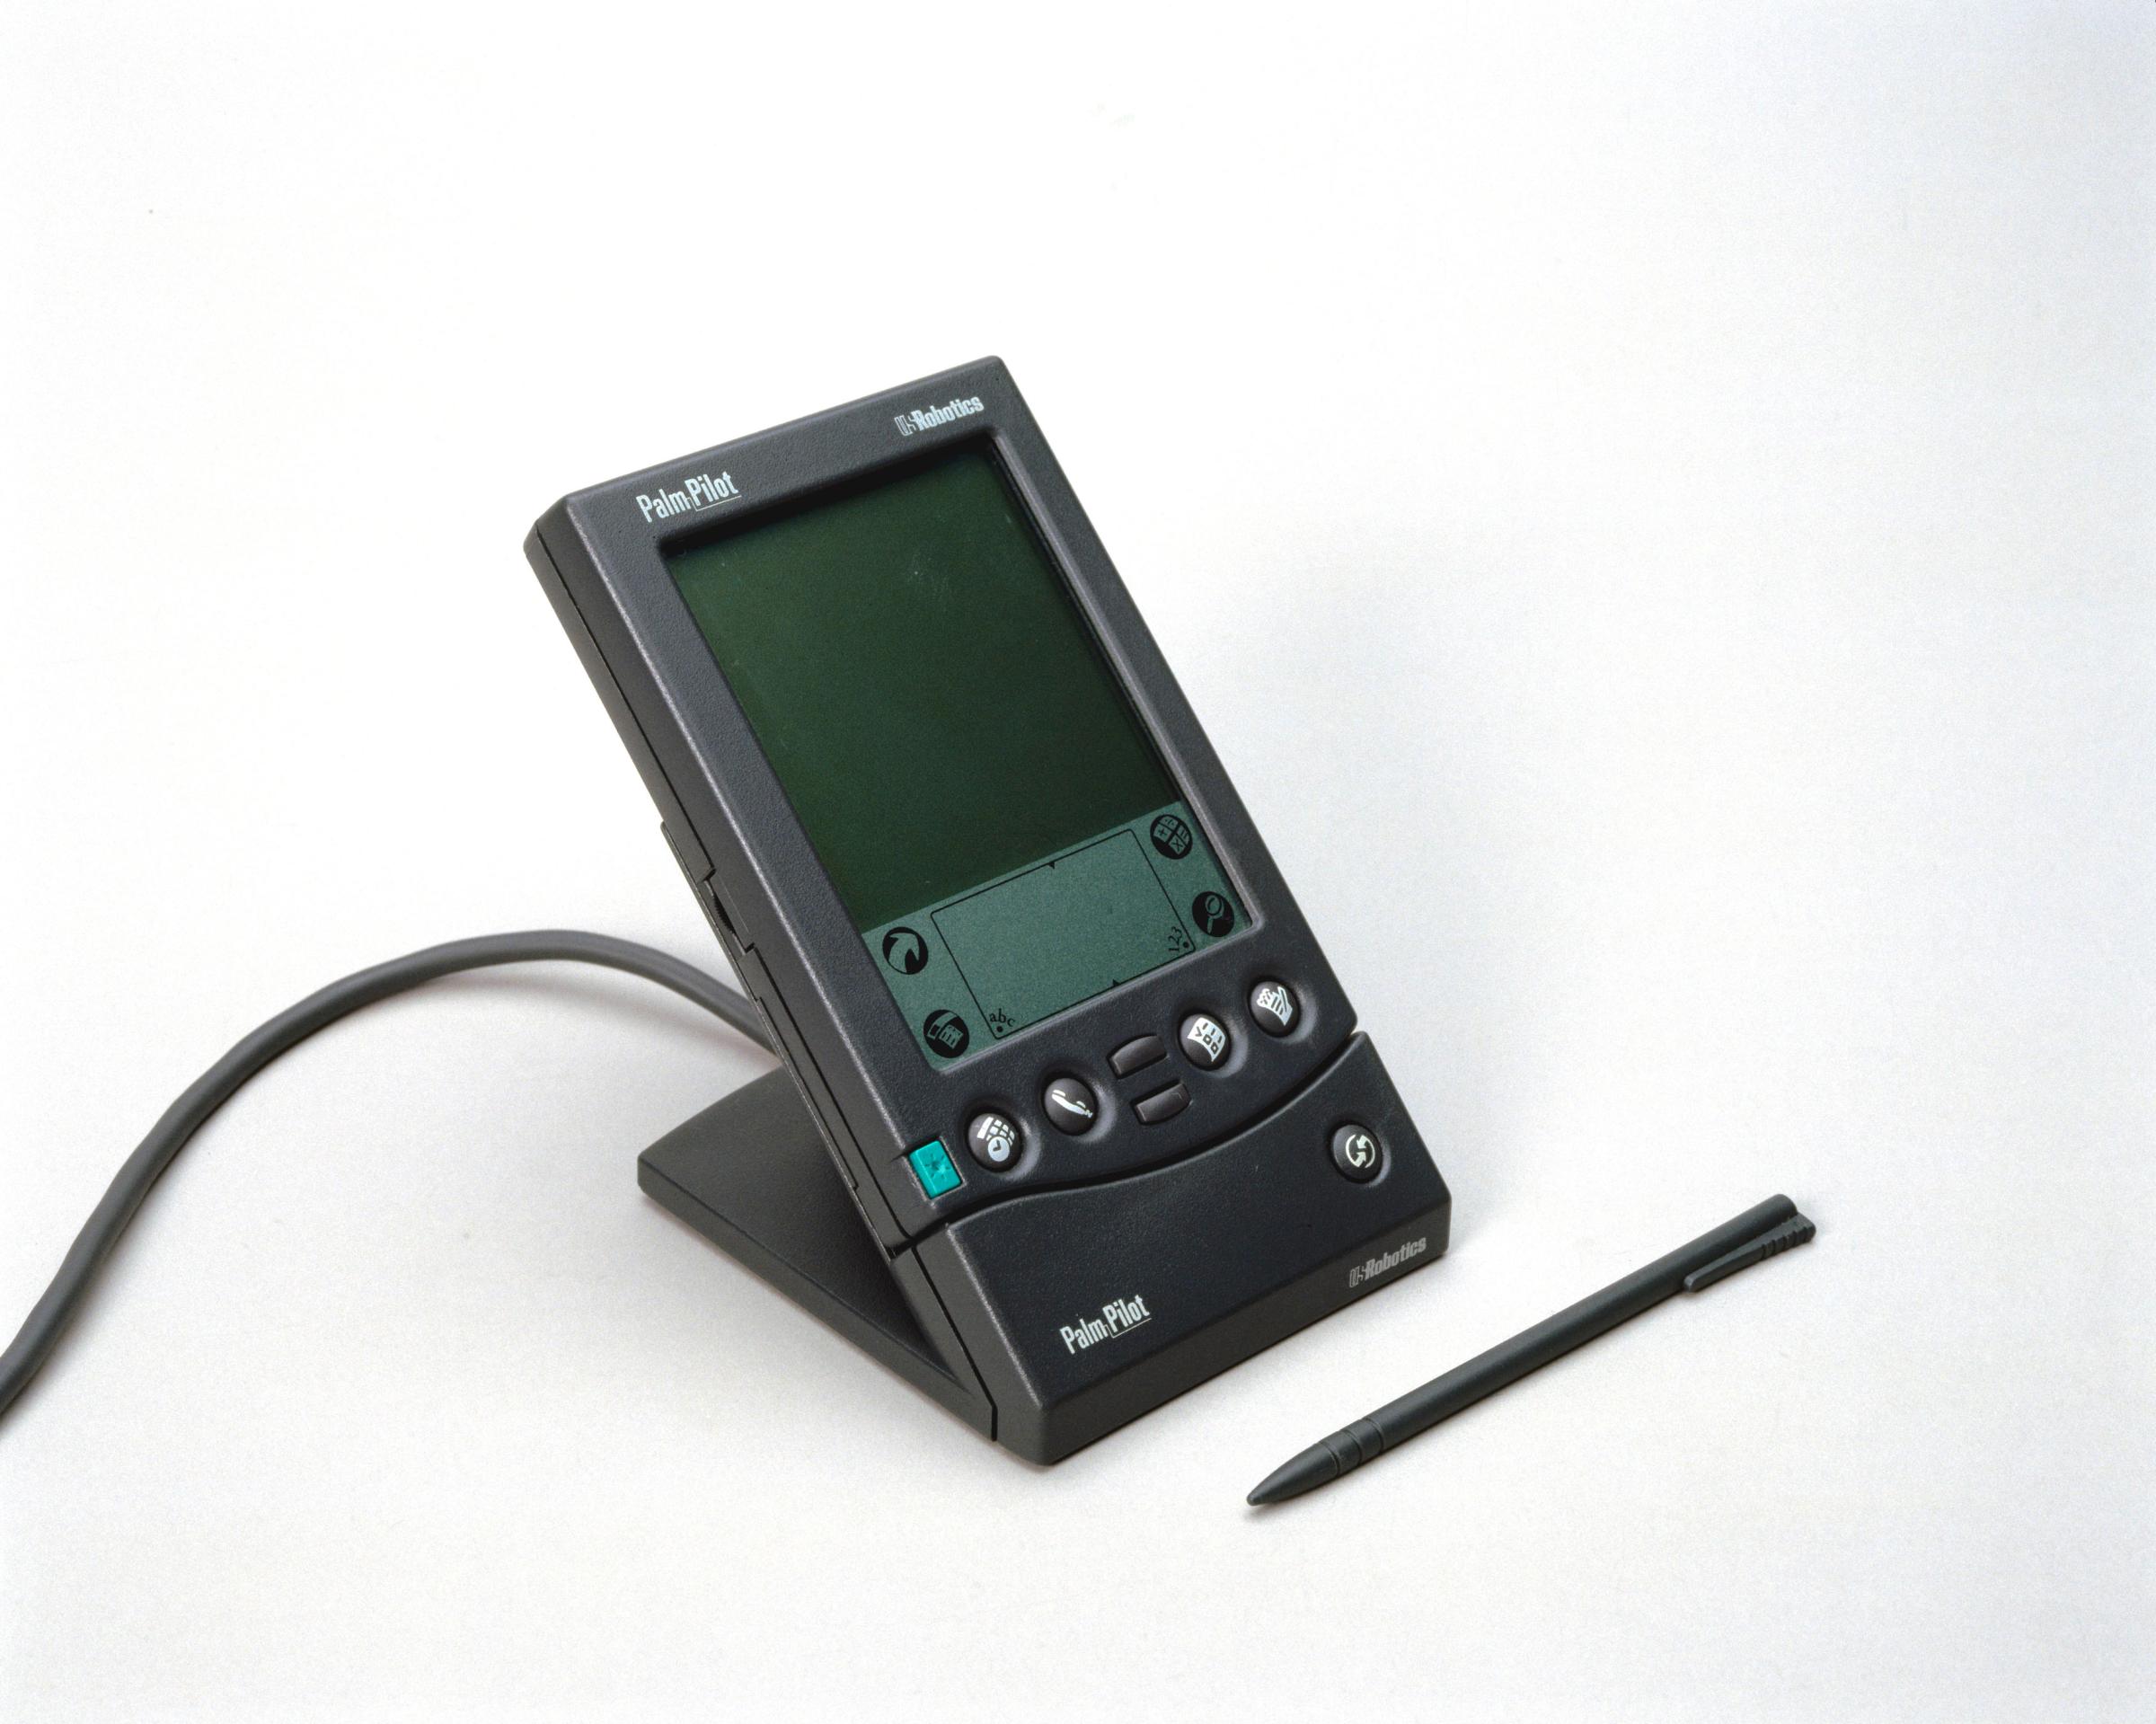 PalmPilot palmtop computer, c 1998.